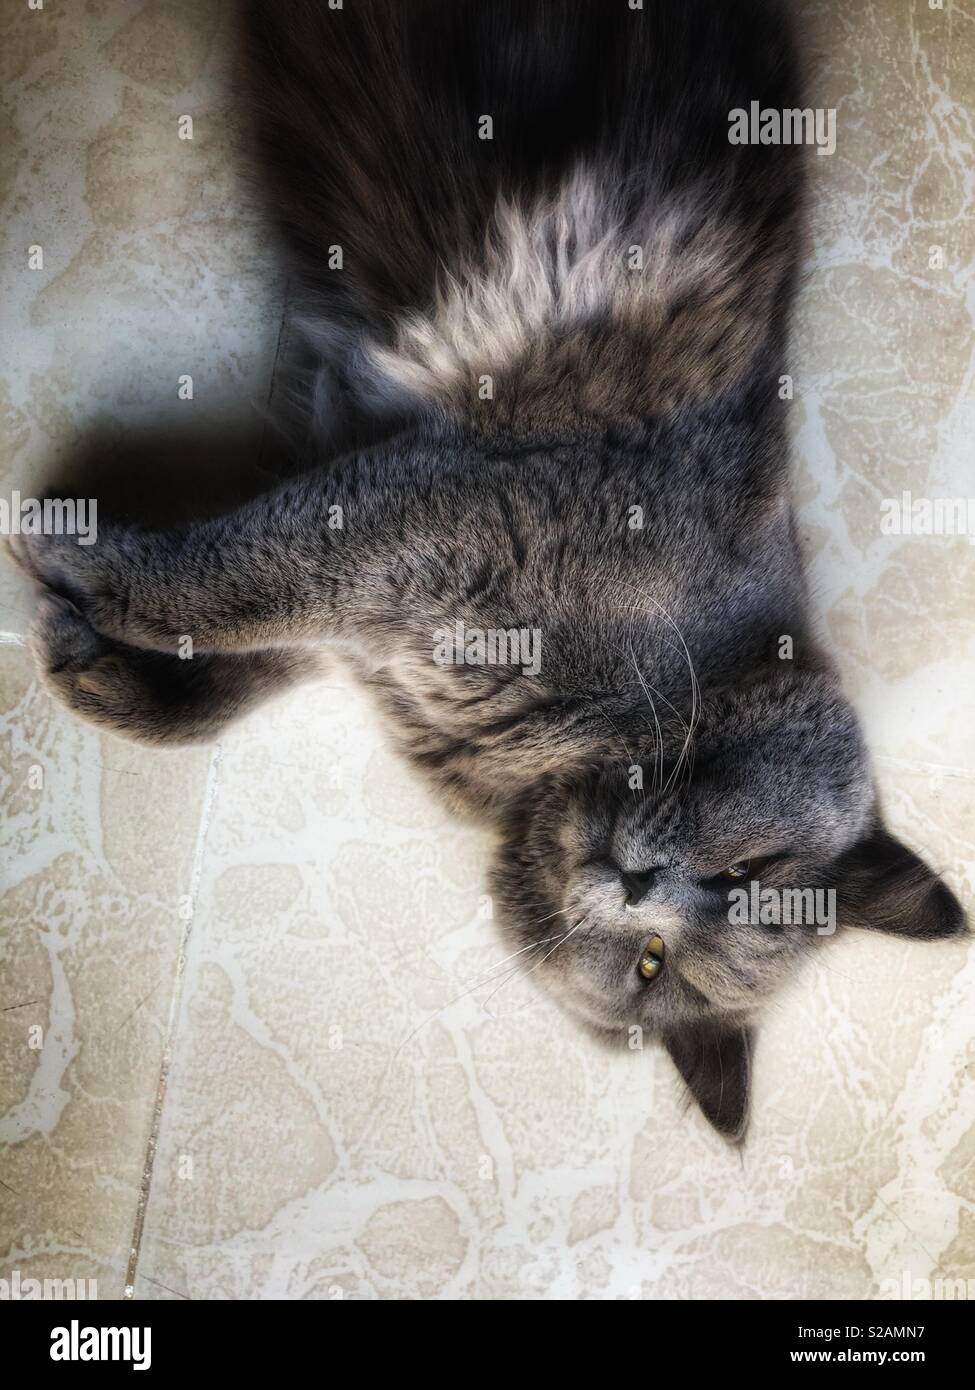 British capelli lunghi Cat recante sulla terra guardando in alto Foto Stock